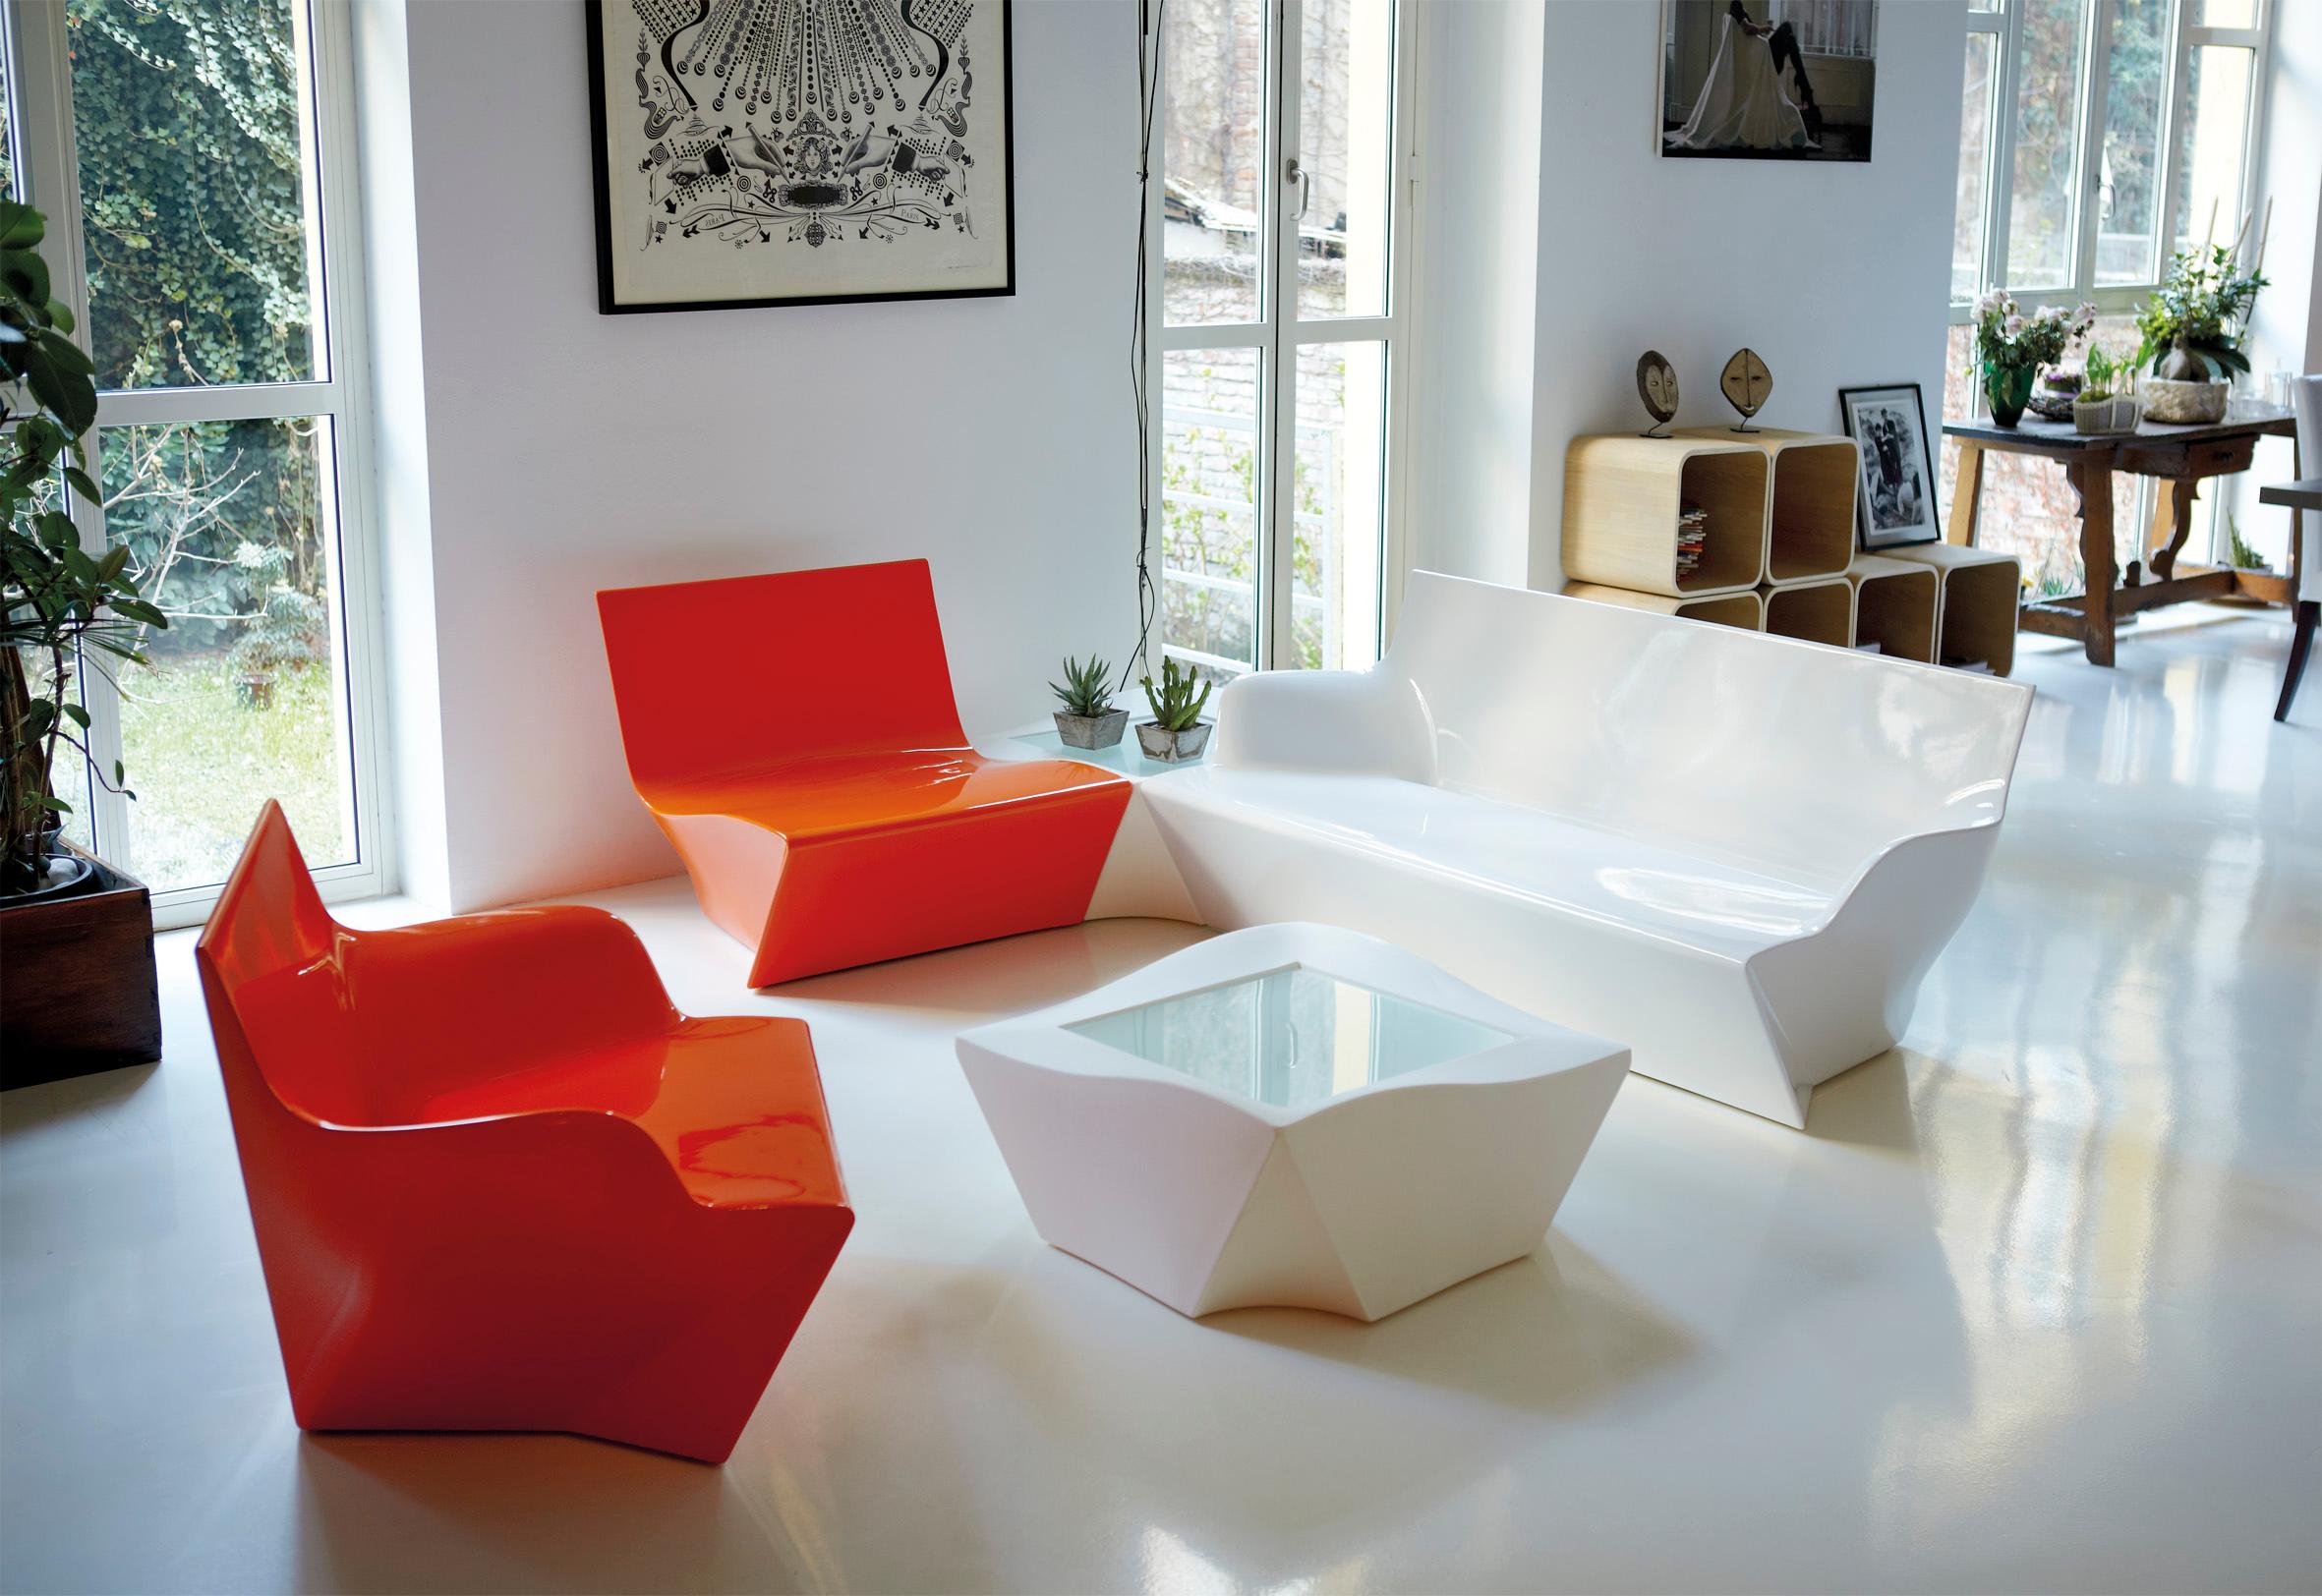 Malva Grüner Kami Ichi niedriger Stuhl von Marc Sadler
Abmessungen: T 75 x B 80 x H 70 cm. Sitzhöhe: 35 cm.
MATERIALEN: Polyethylen.
Gewicht: 15 kg.

Erhältlich in verschiedenen Farbvarianten. Dieses Produkt ist für die Verwendung im Innen- und